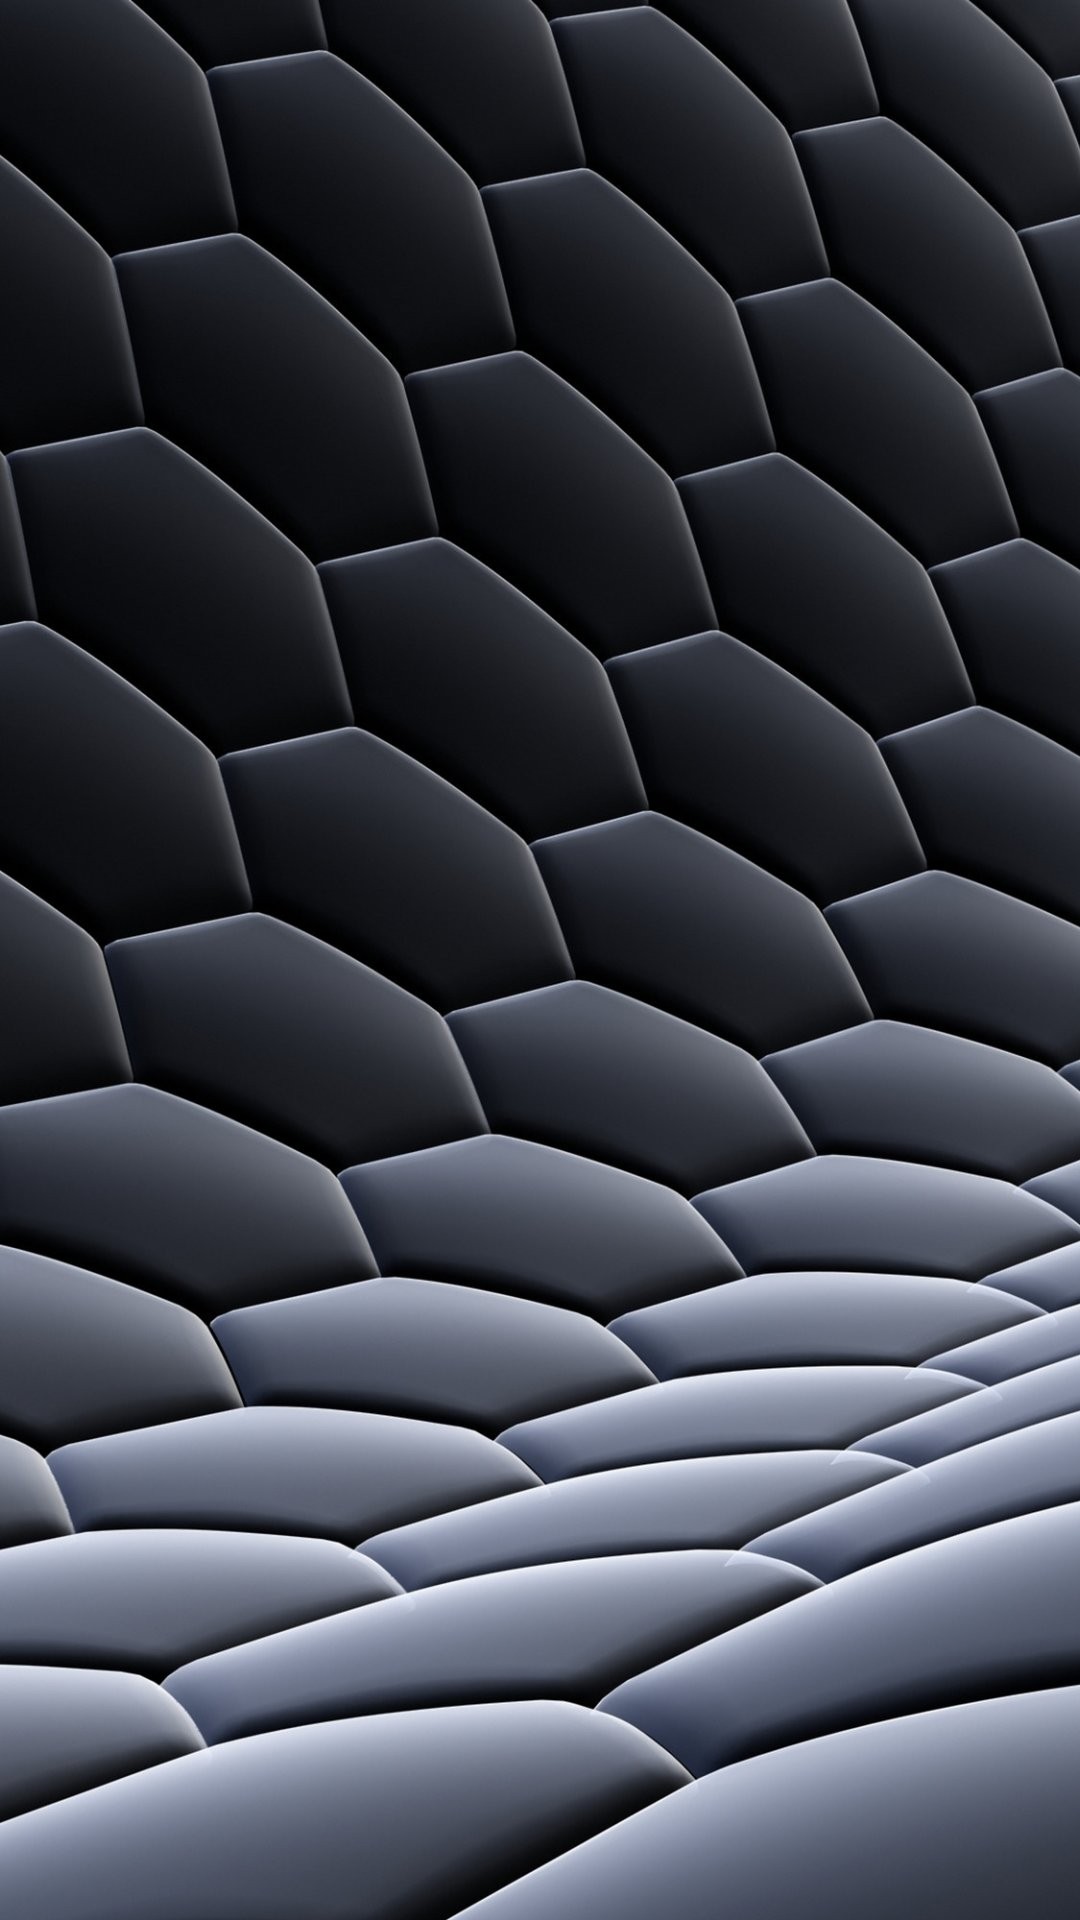 Carbon Fiber Wallpapers Iphone - Wallpaper Cave